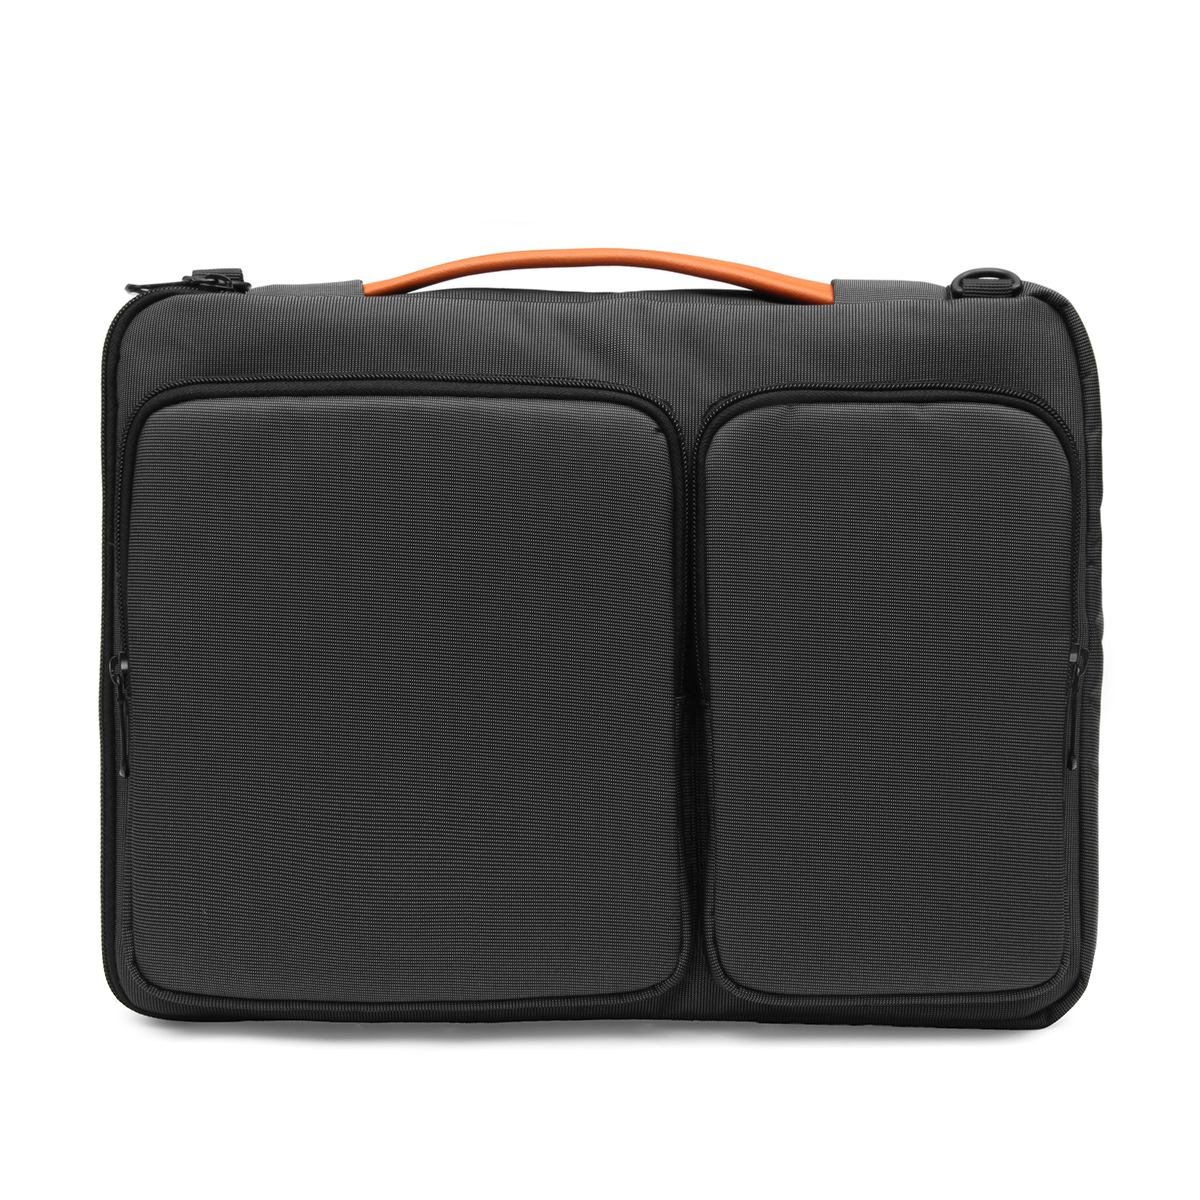 14 Inch Laptop Notebook Bag Messenger Bag Travel Bag Shoulder Bag ...